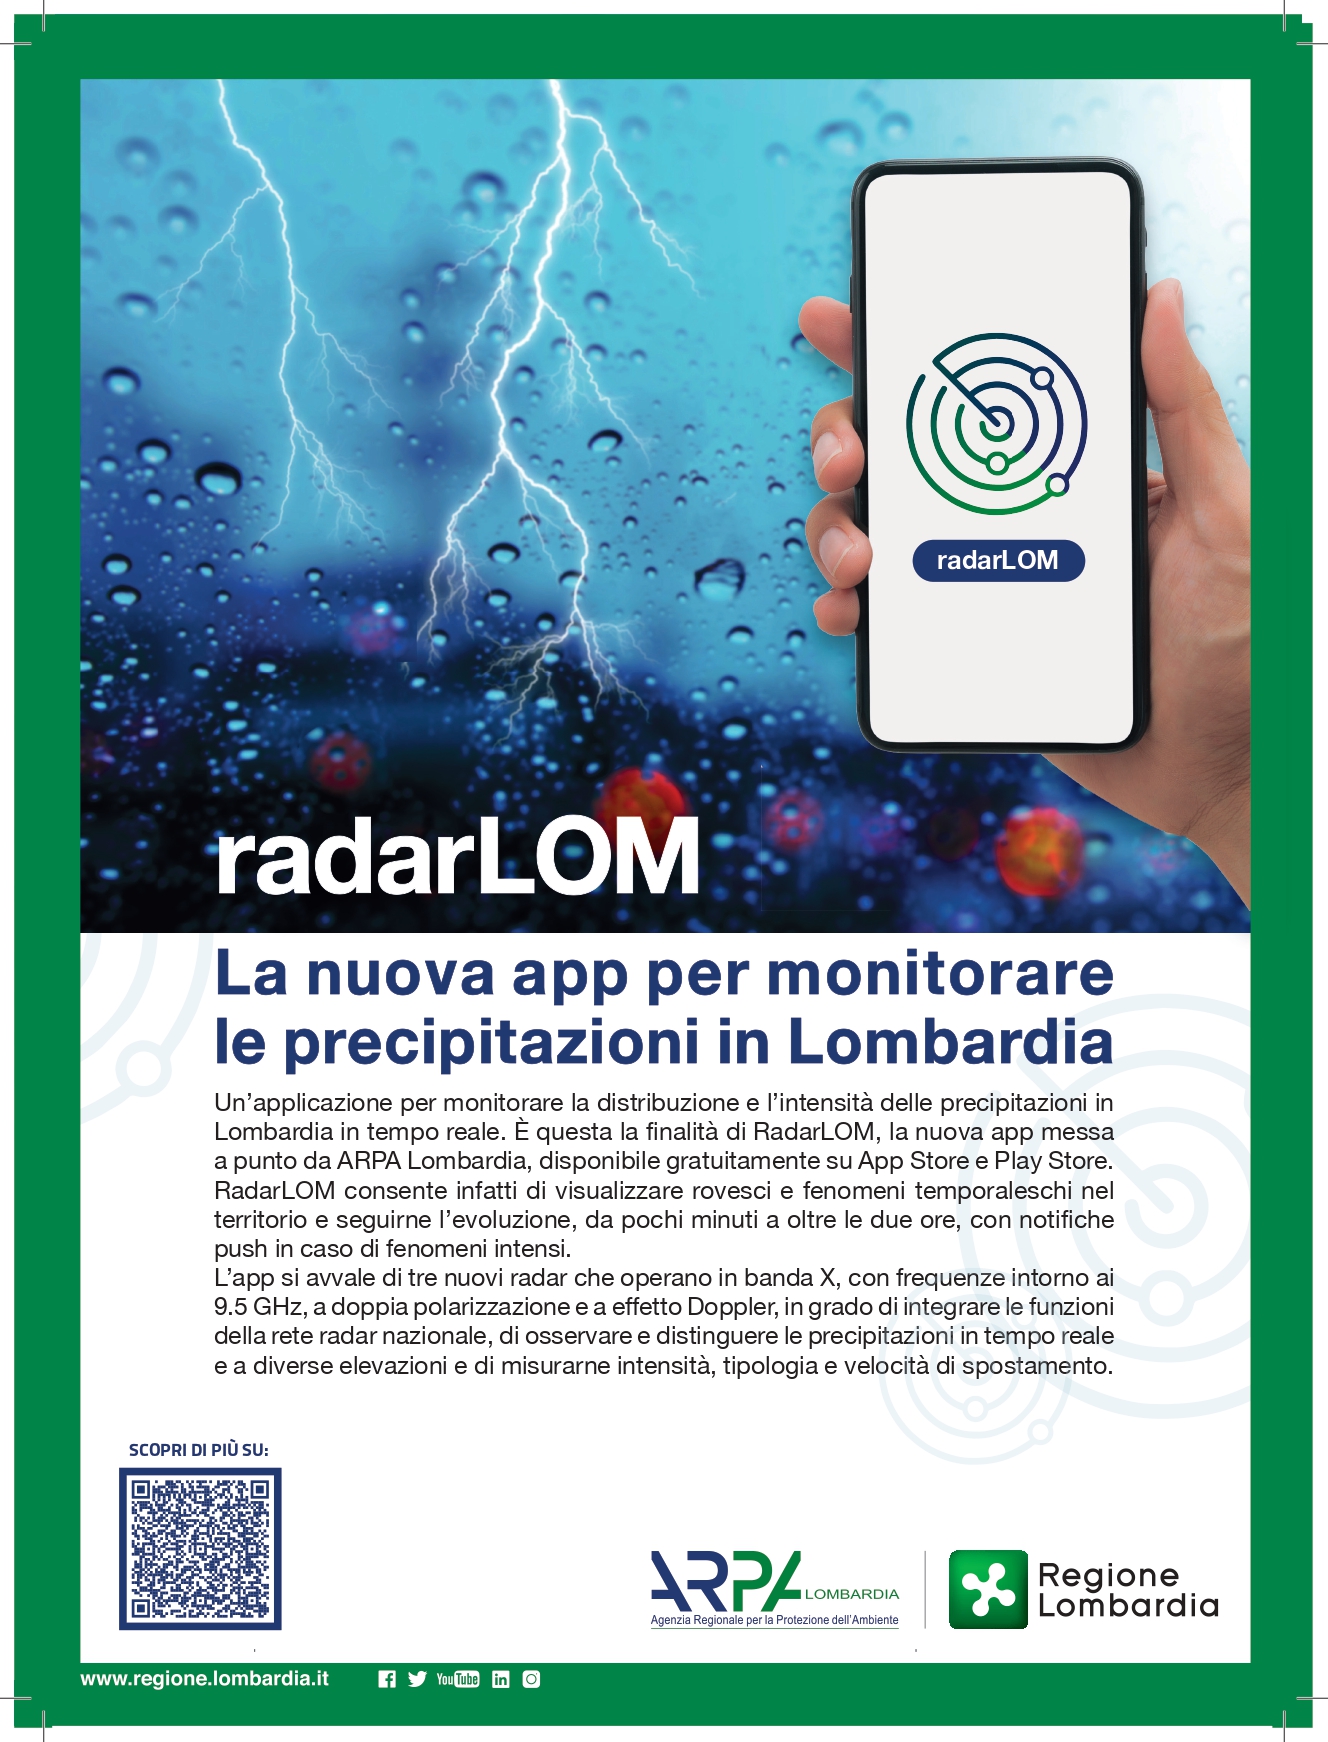 RadarLOM, la nuova applicazione per monitorare le precipitazioni in Lombardia